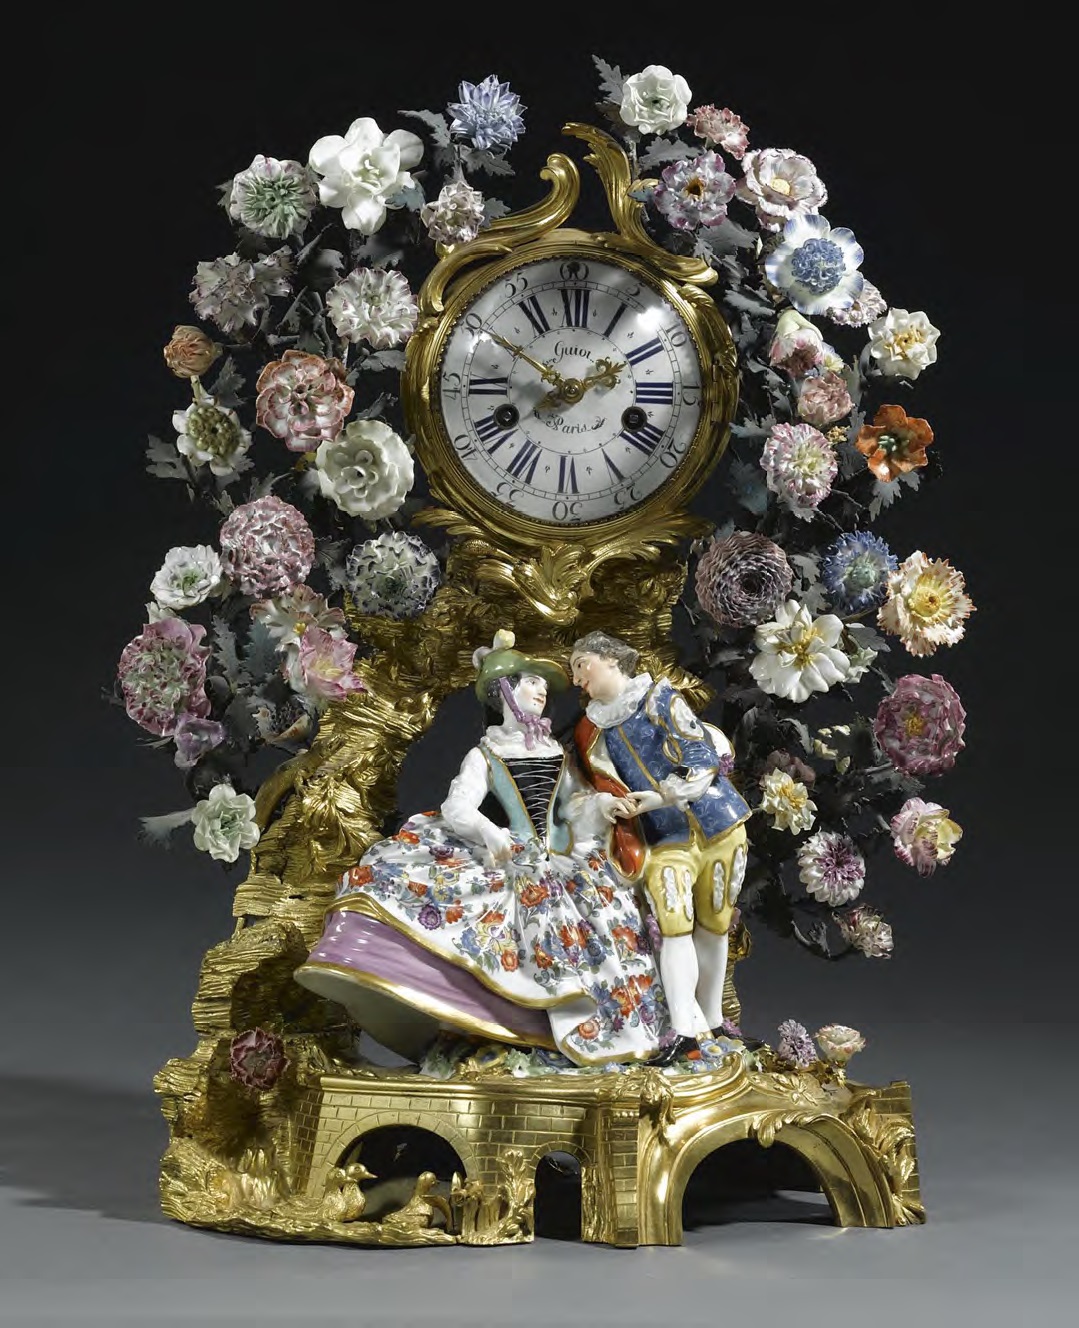 Часы, декорированные фарфоровыми цветами Винсенна и фарфоровыми фигурами, созданными по моделям И. Кендлера. Середина XVIII в. © Sothebys Images Limited, 2015.